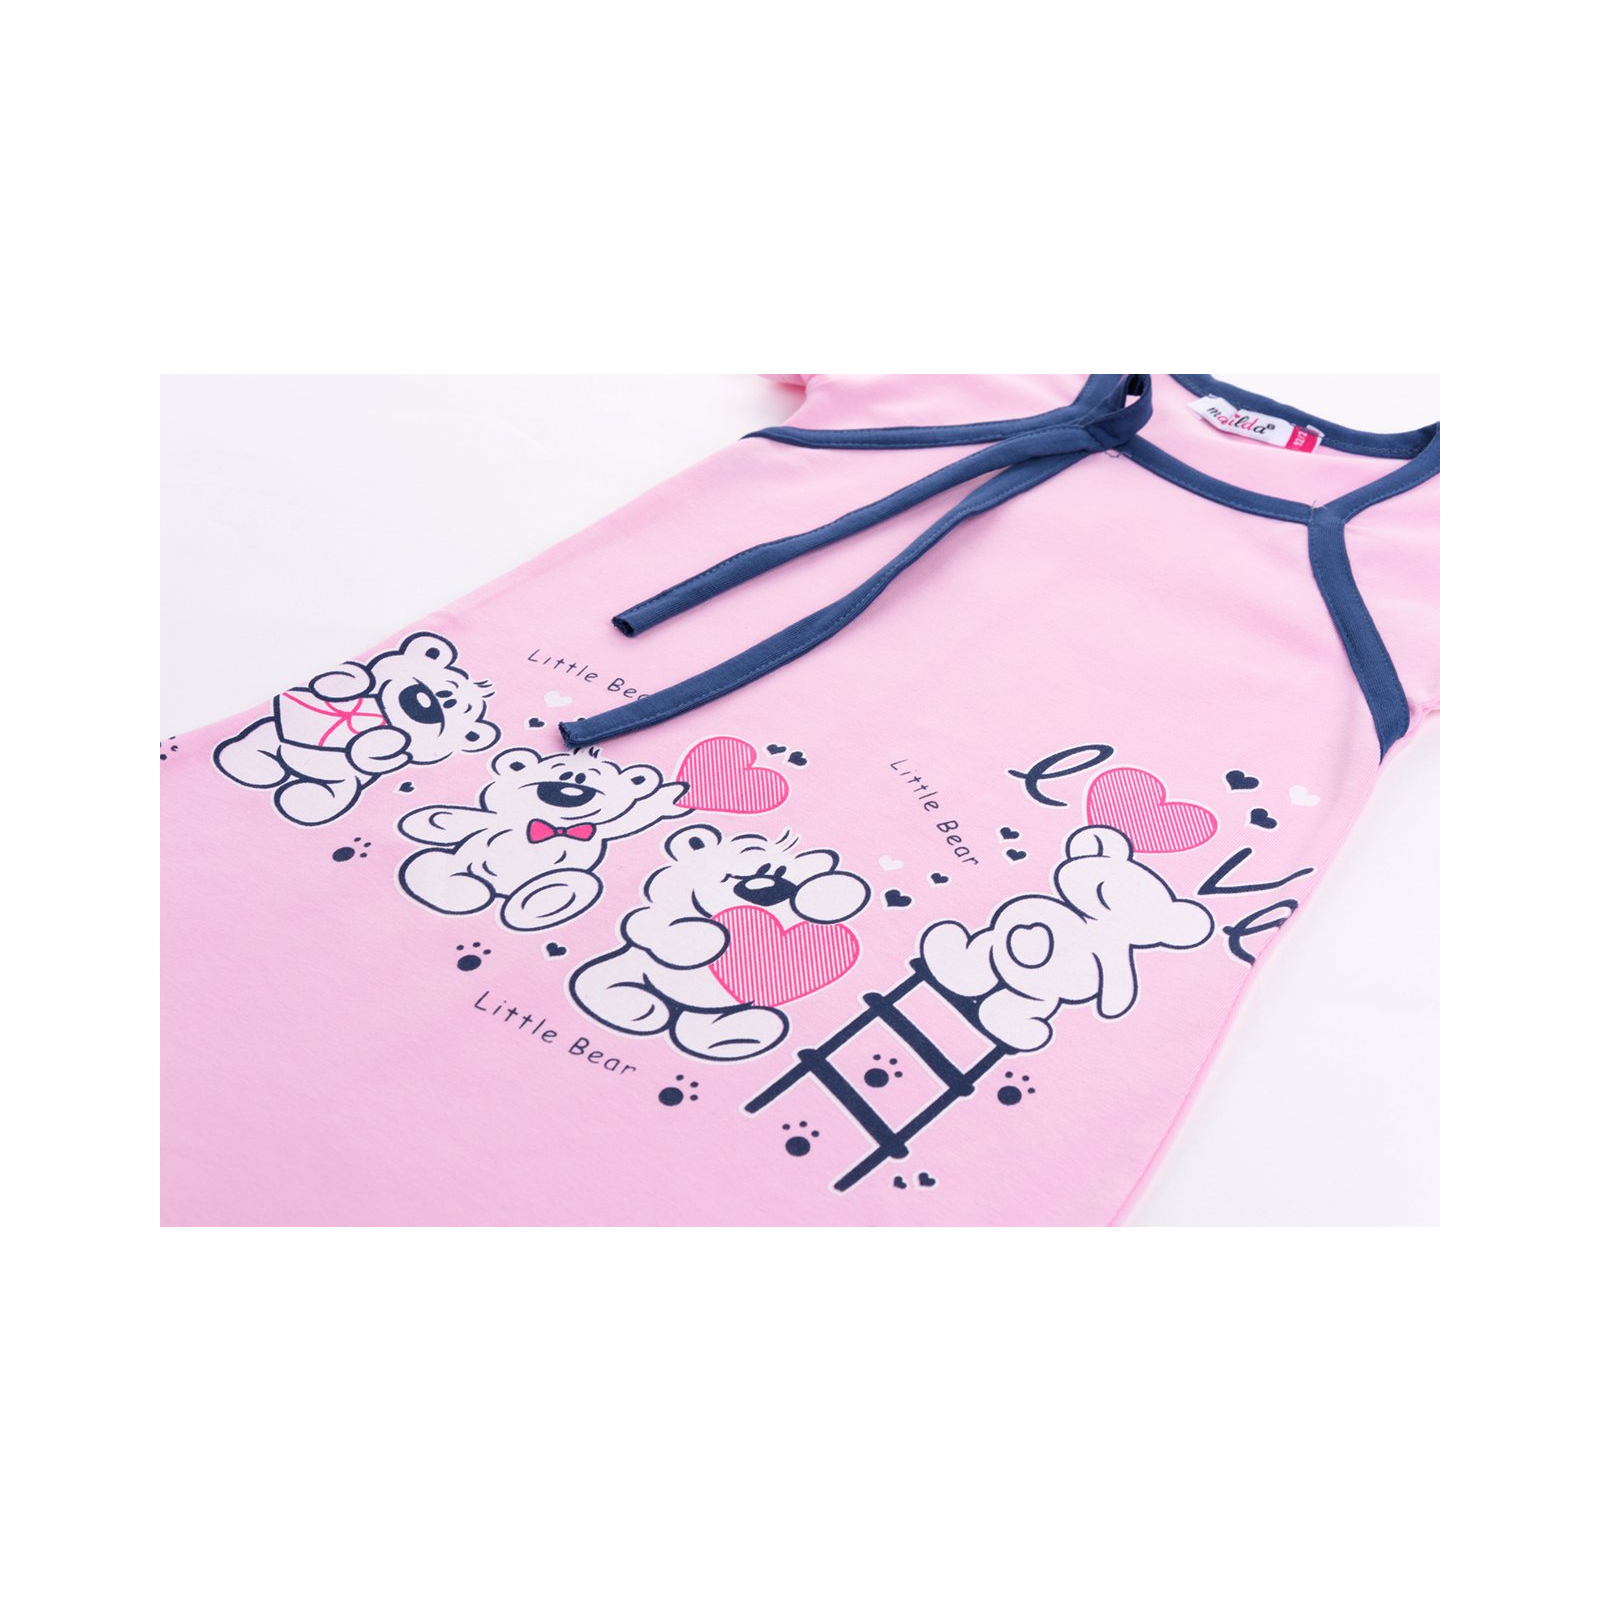 Пижама Matilda и халат с мишками "Love" (7445-110G-pink) изображение 8